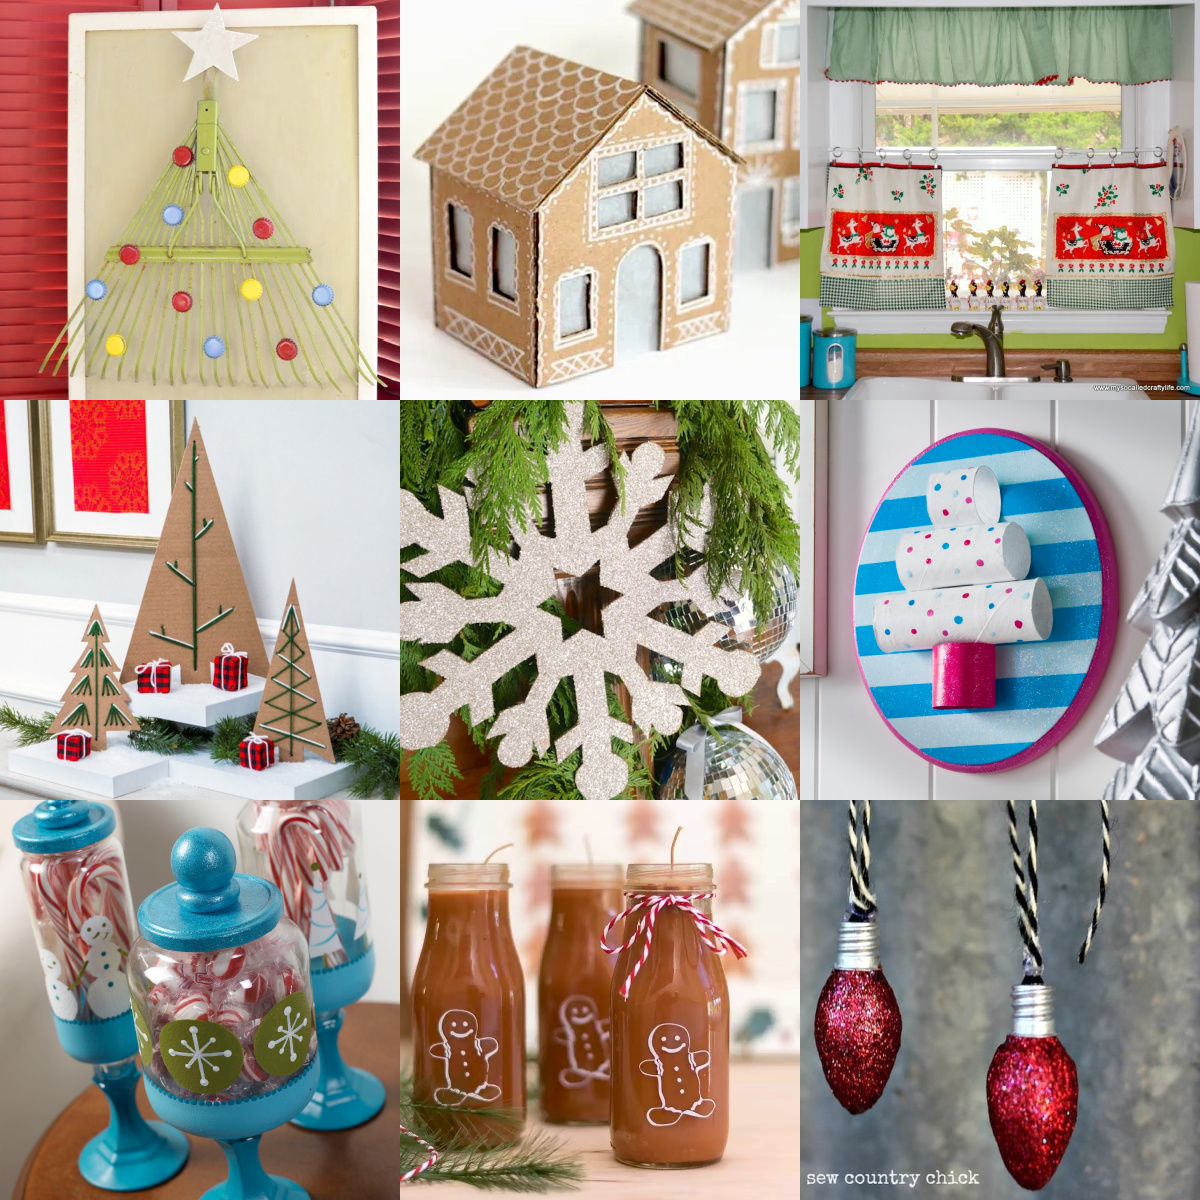 https://modpodgerocksblog.b-cdn.net/wp-content/uploads/2022/11/Christmas-decorations-from-recycled-materials.jpg